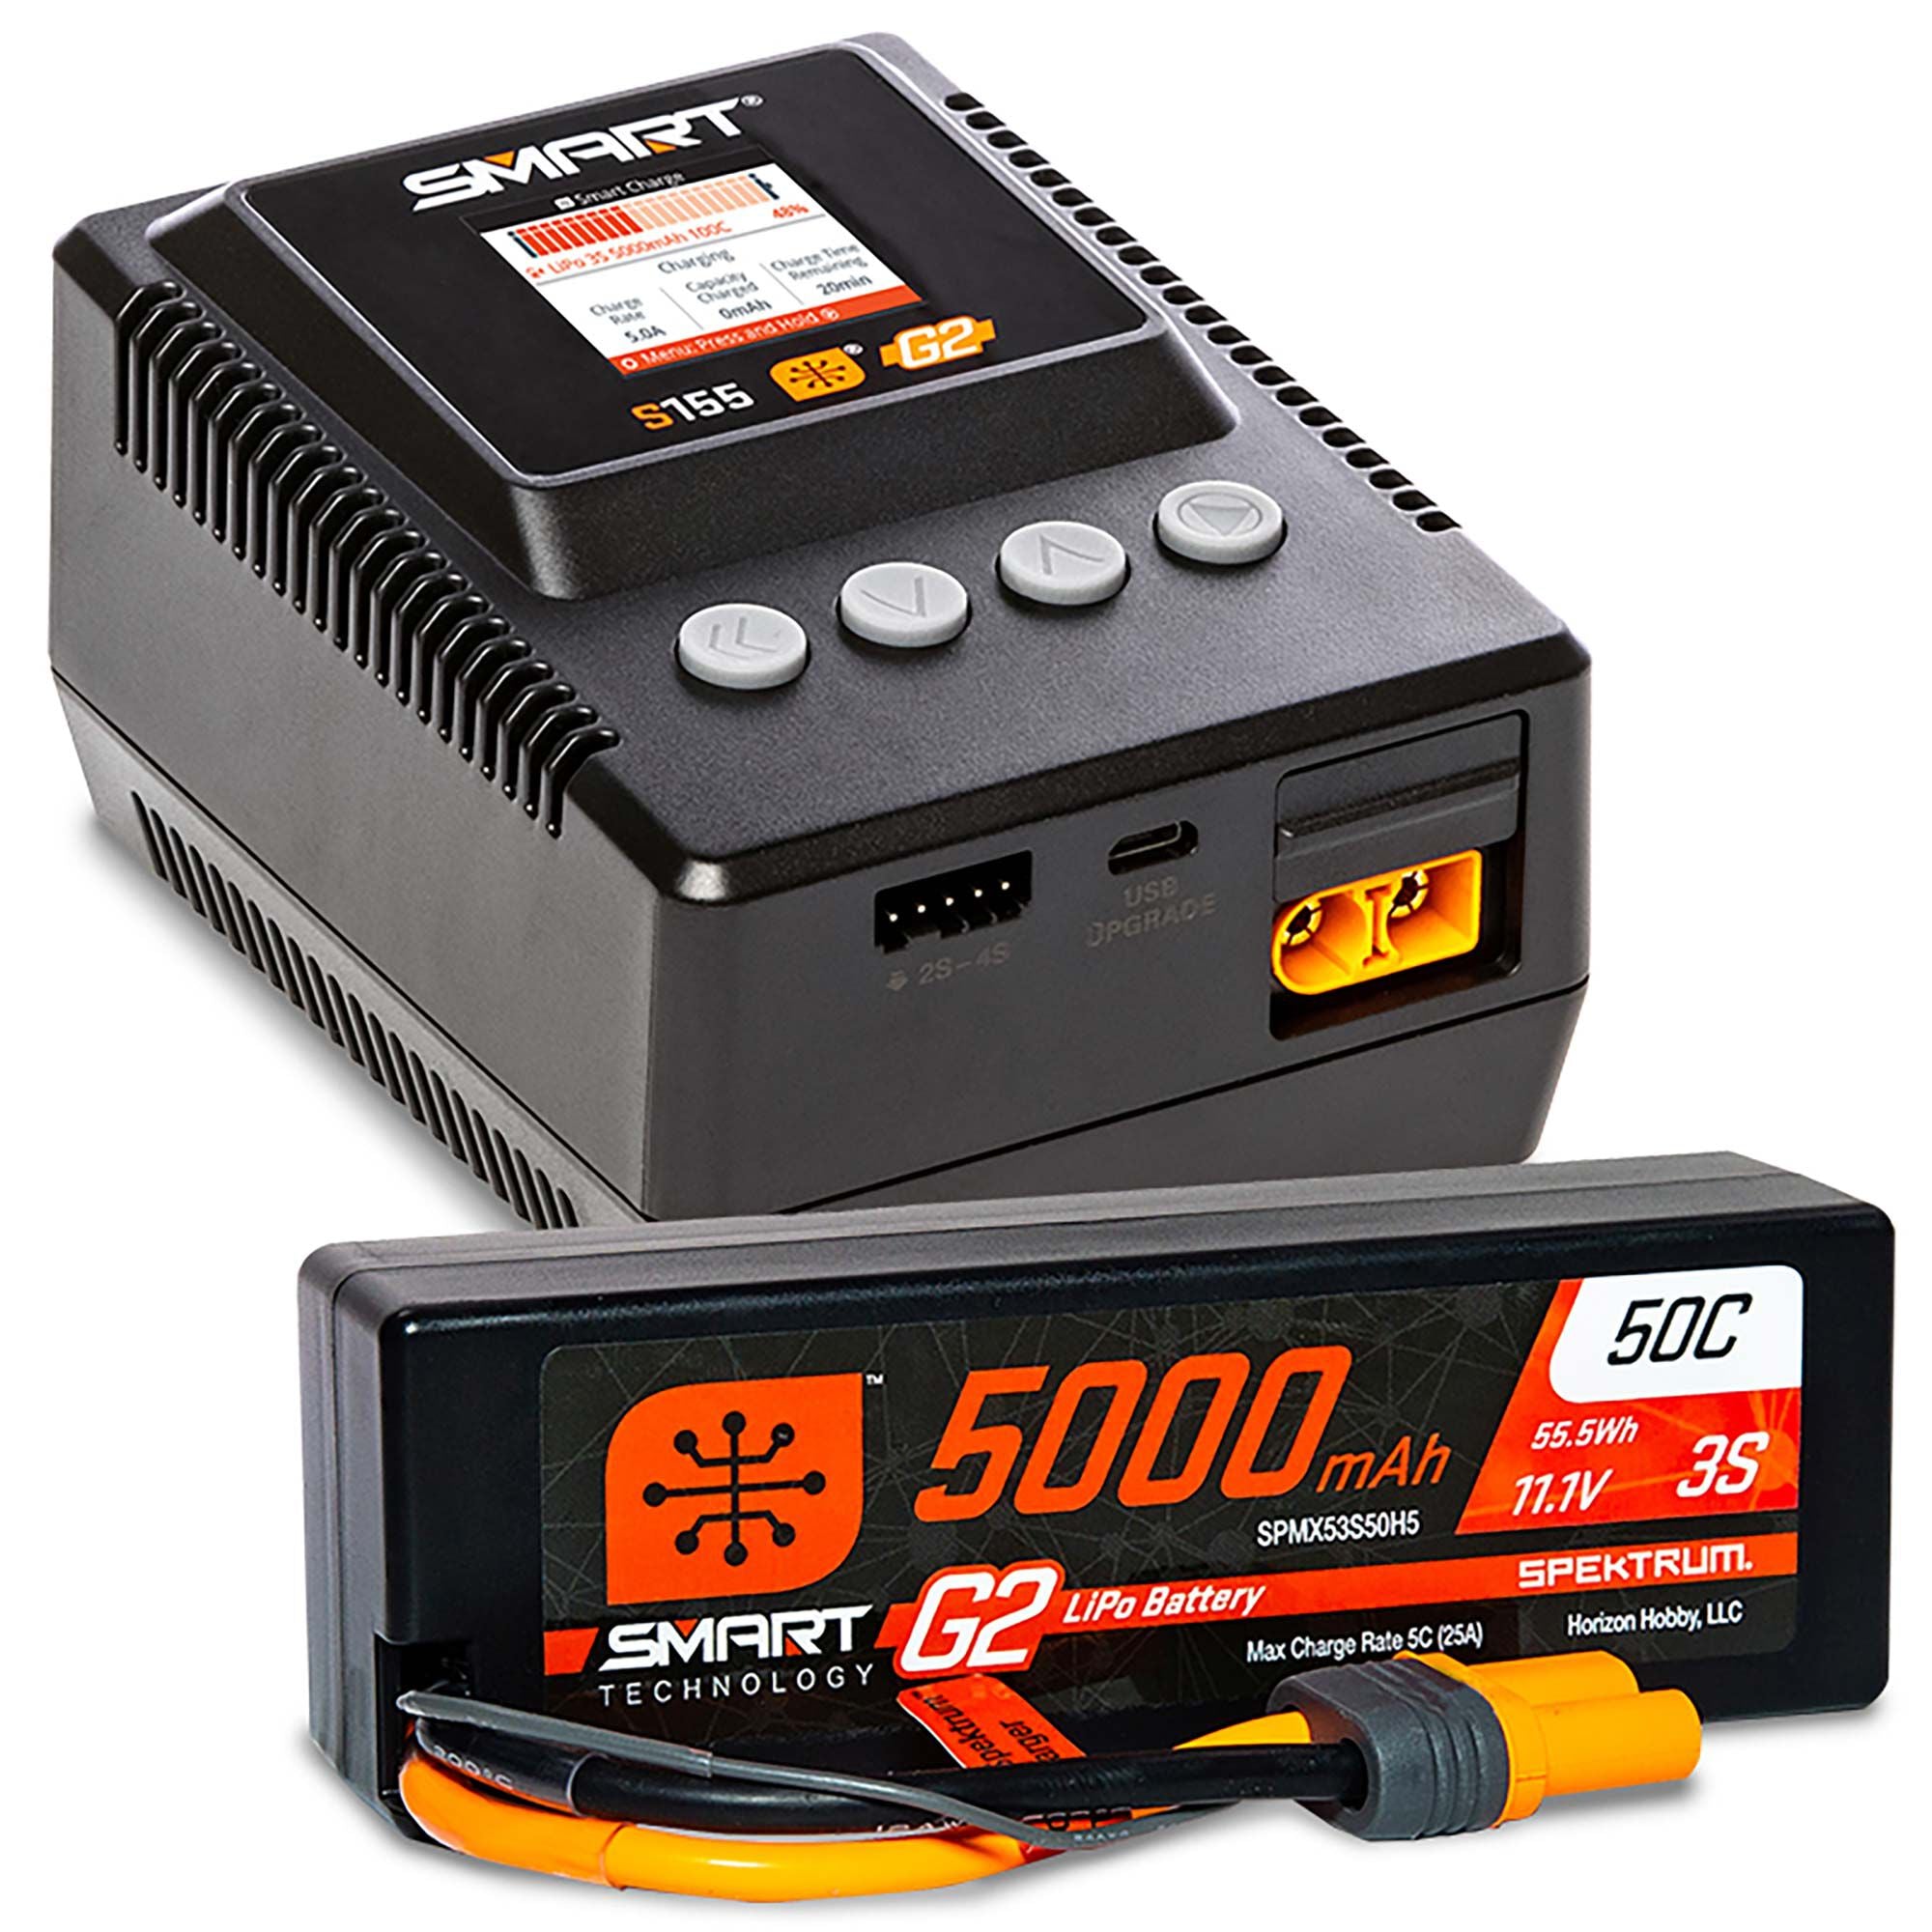 Paquete de superficie Spektrum Smart 3s Powerstage: batería LiPo 3S de 5000 mAh / cargador S155 